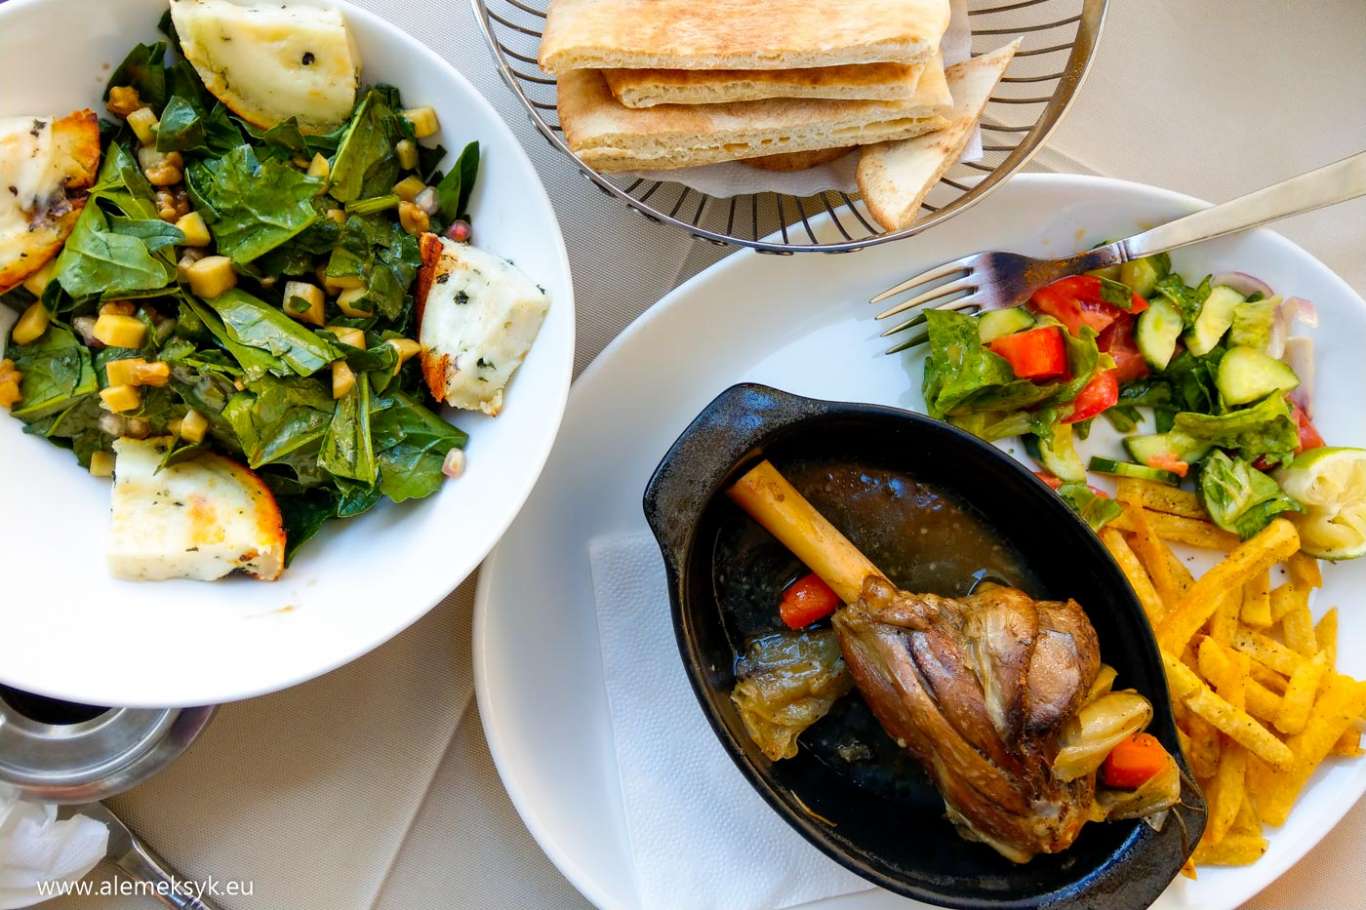 Pafos, Omodos, Pissouri, Polis - czyli gdzie zjeść i co zjeść na Cyprze?